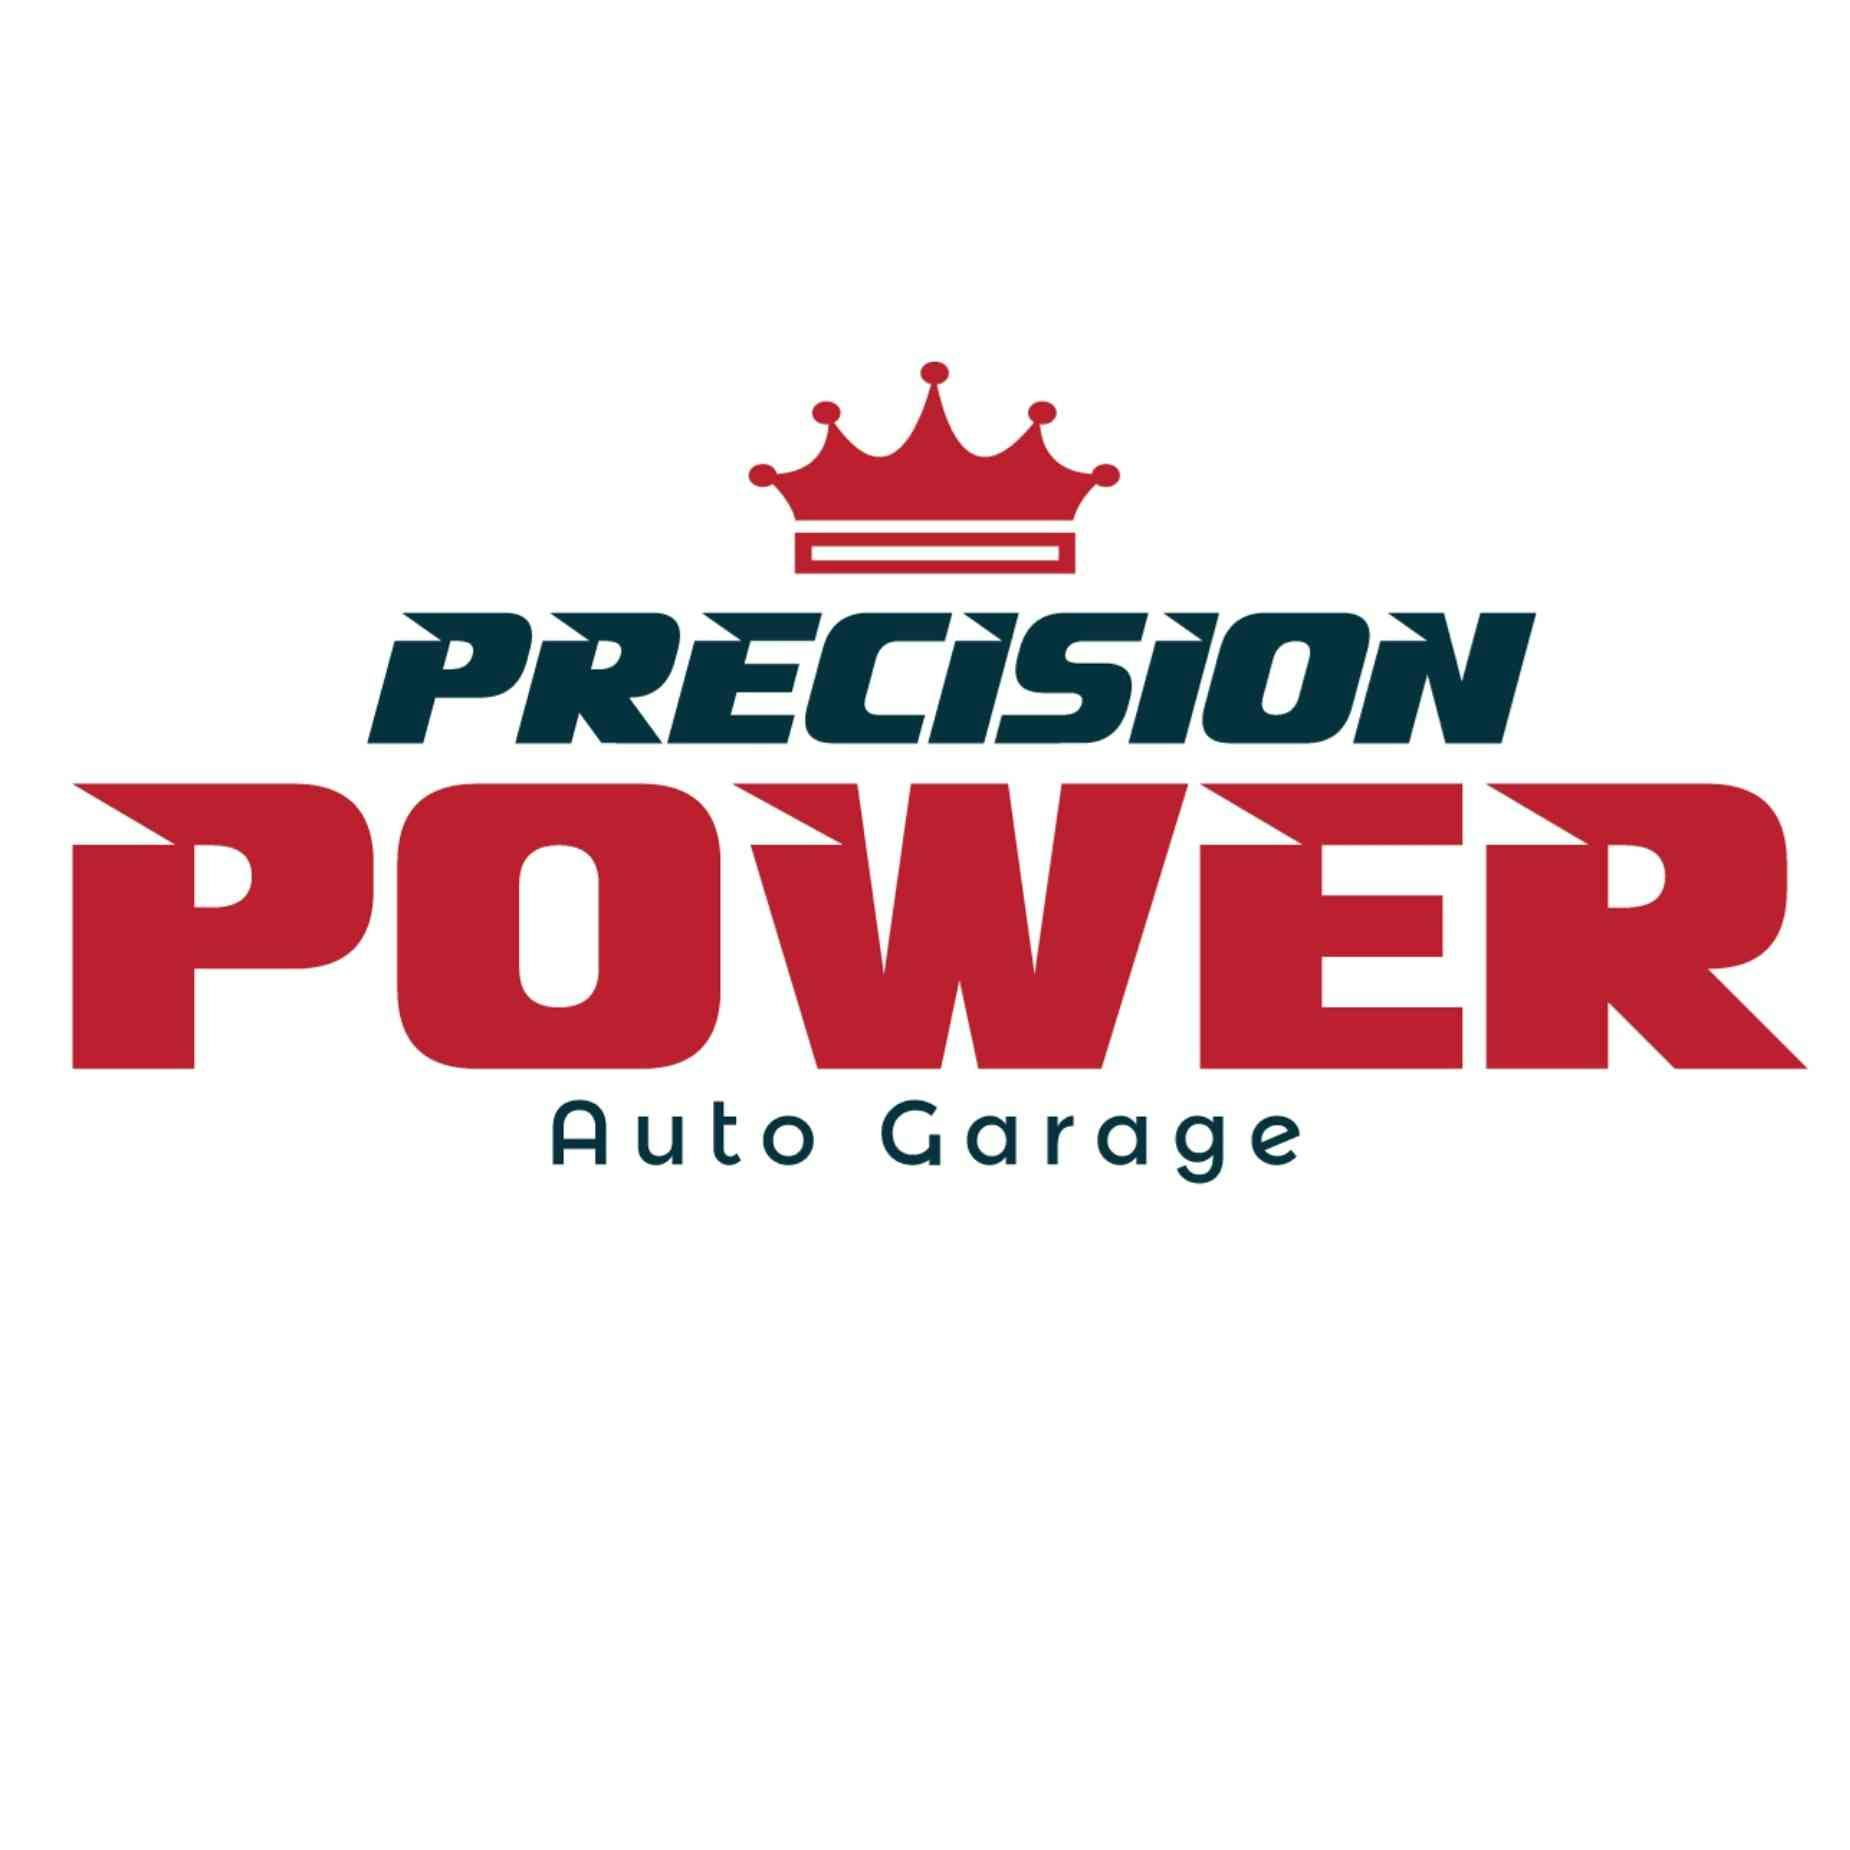 Precision Power Auto Garage Brand Logo